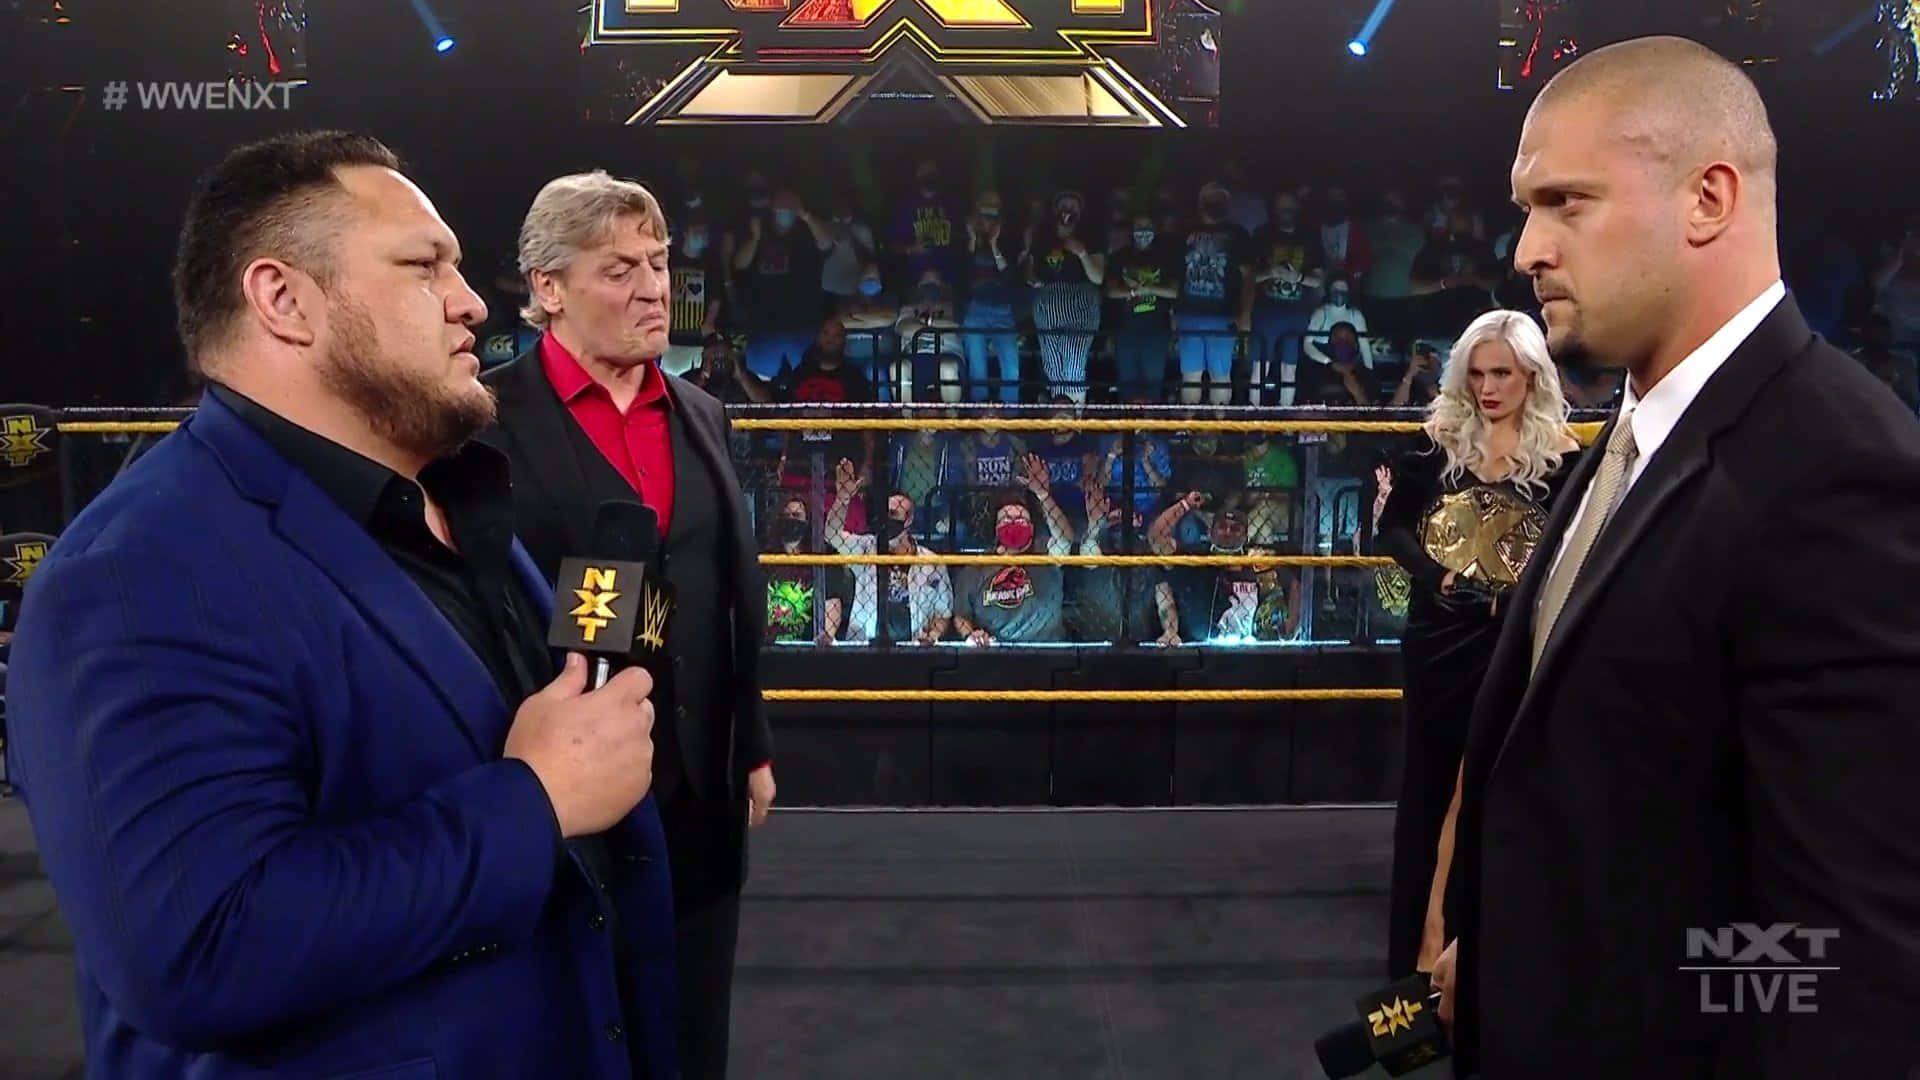 William Regal Samoa Joe Karrion Kross WWE NXT Billedtekst Wallpaper